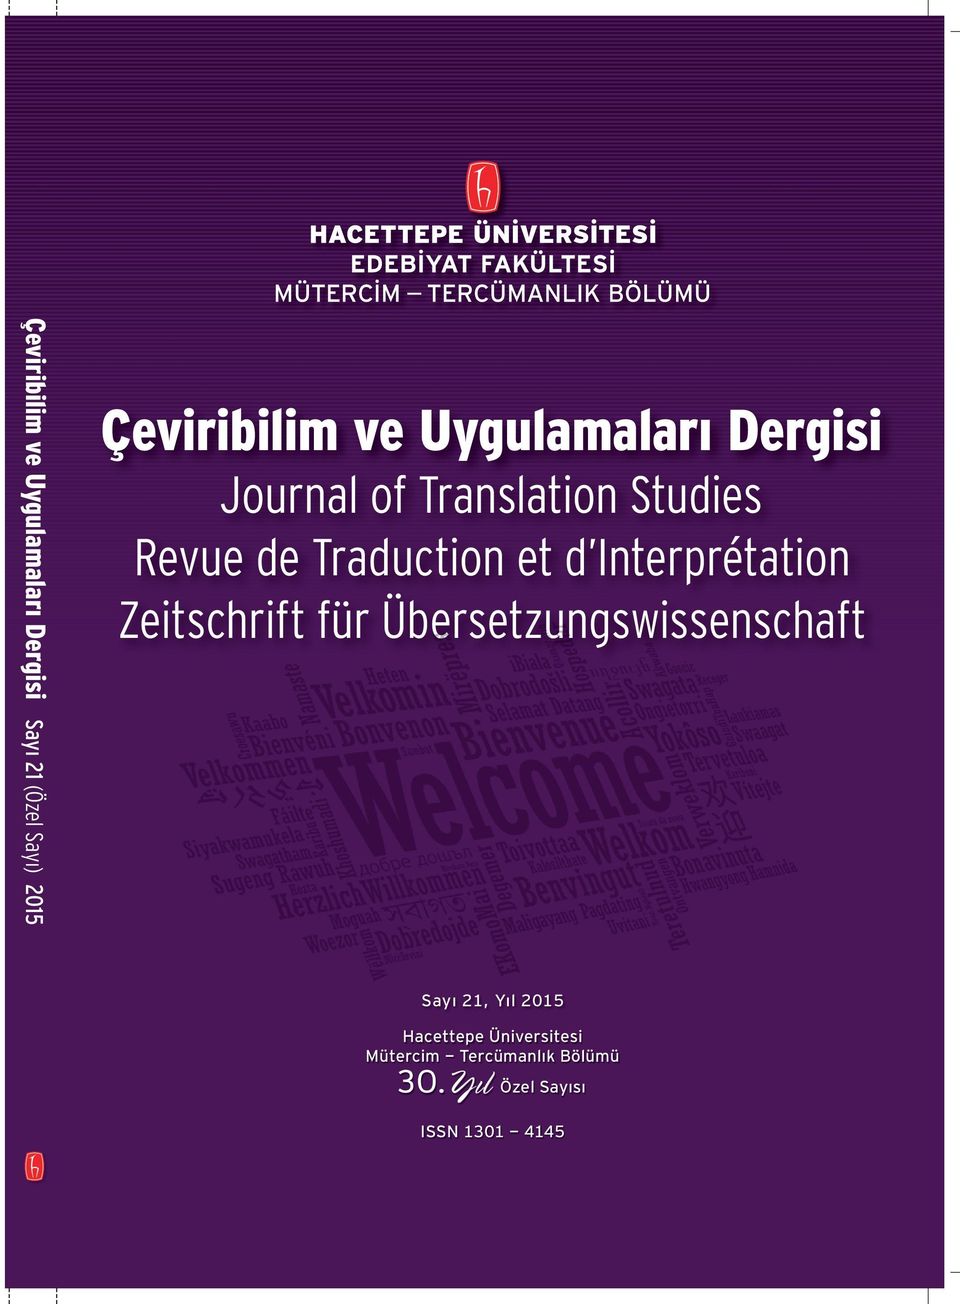 Interprétation Zeitschrift für Übersetzungswissenschaft Sayı 21, Yıl 2015